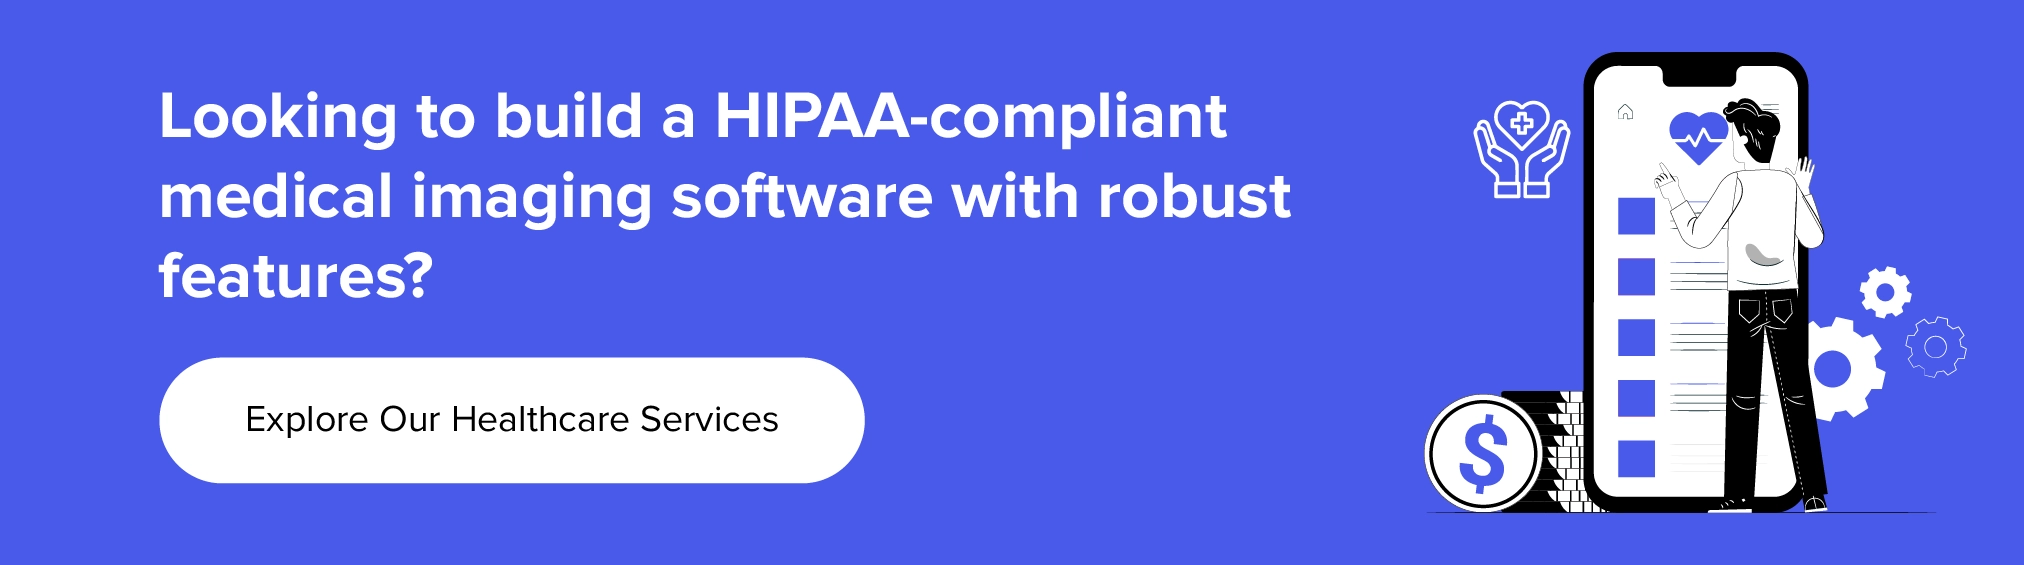 與我們合作建構符合 HIPAA 要求的醫學影像軟體